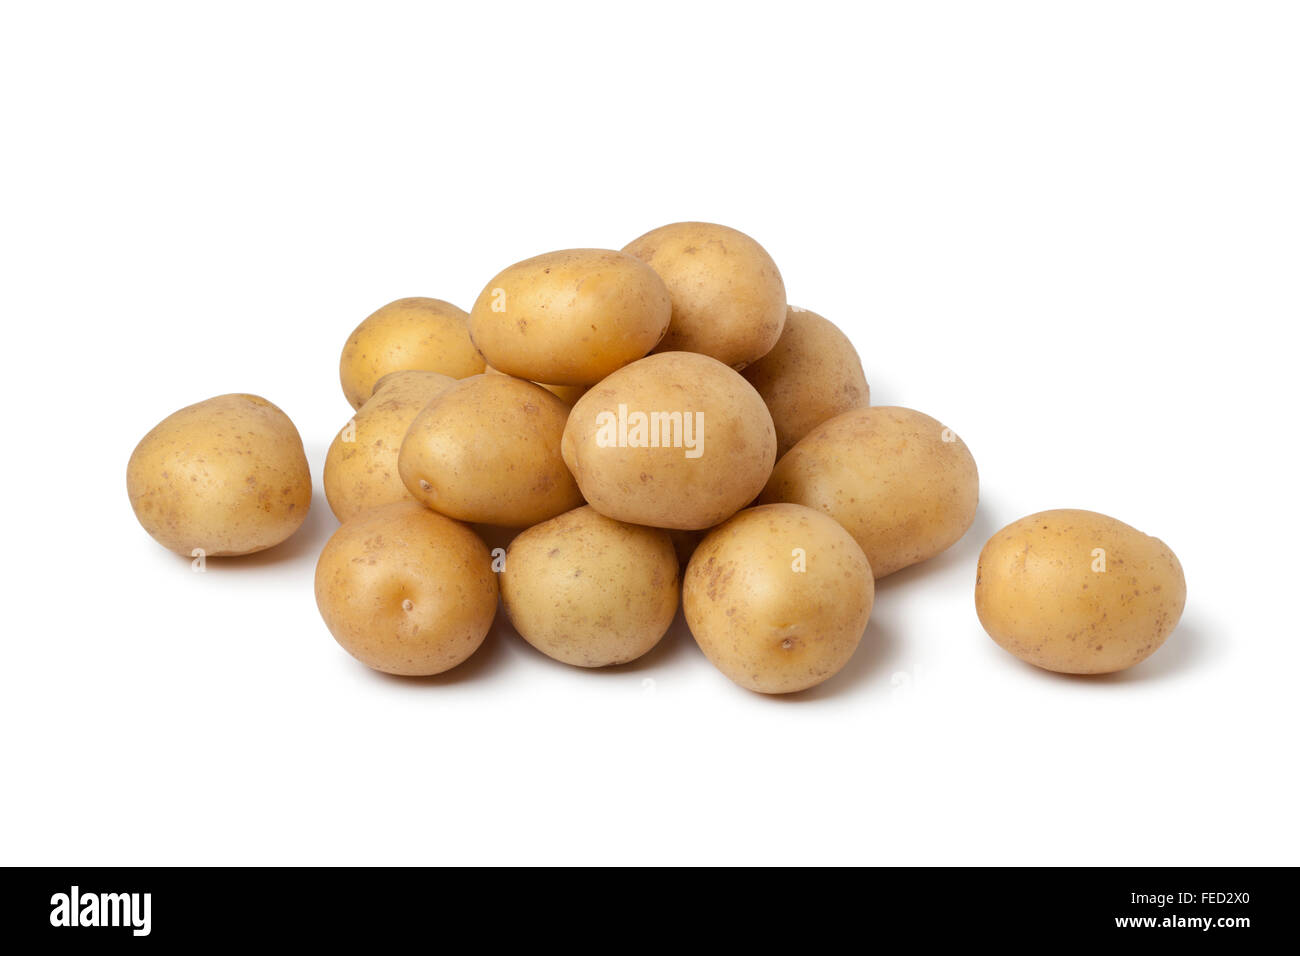 Il diametro esterno di heap freschi patate novelle piccole su sfondo bianco Foto Stock